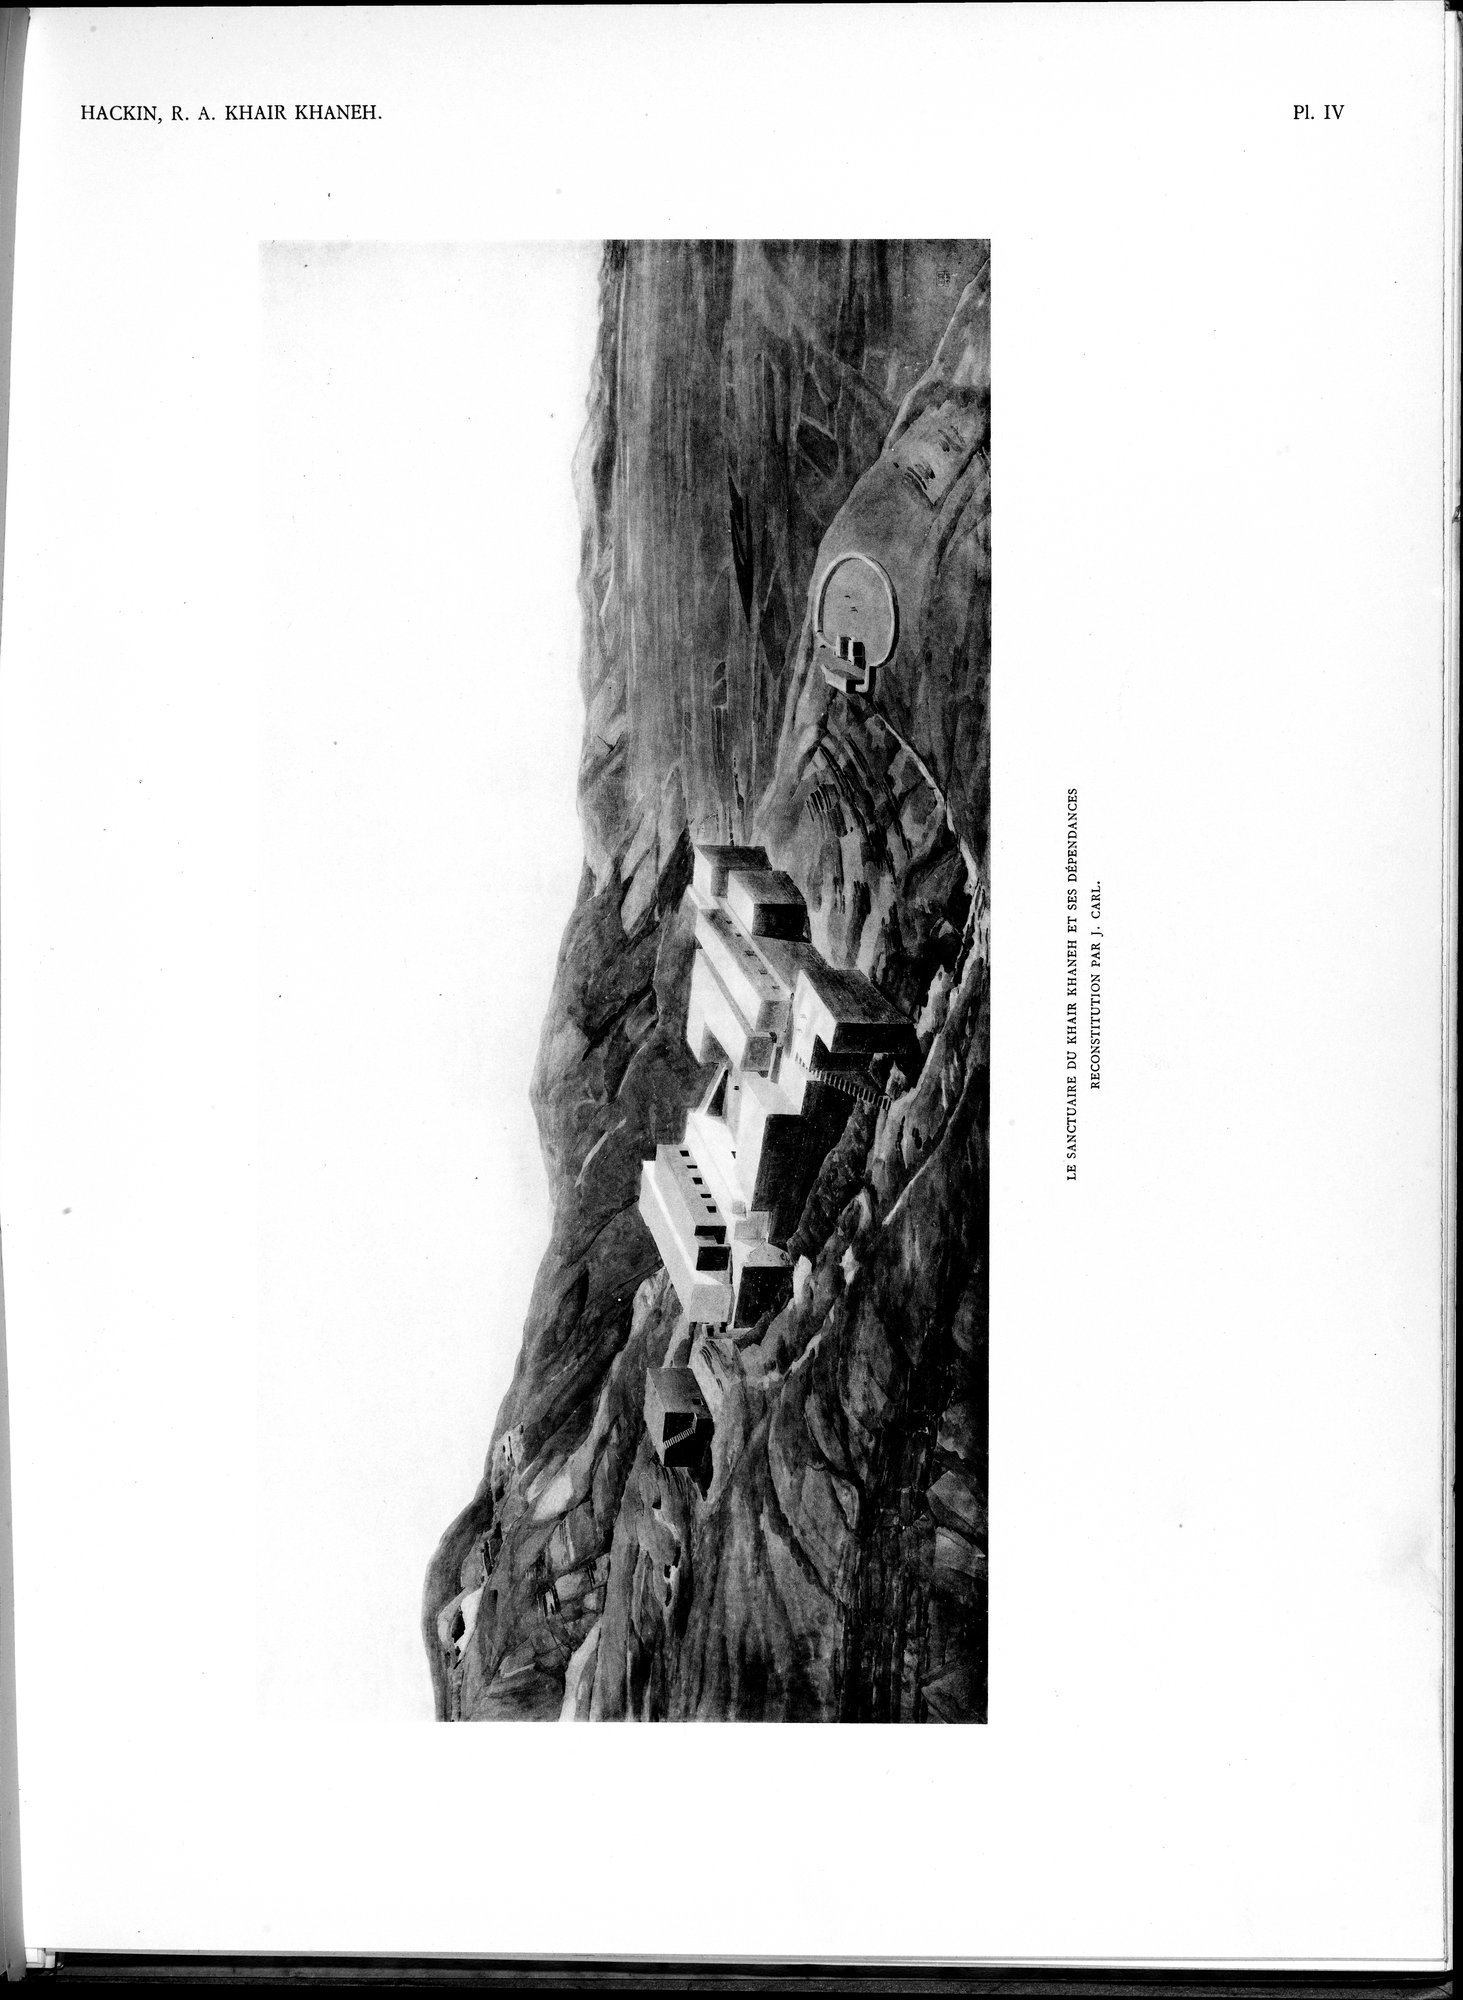 Recherches Archéologiques au Col de Khair khaneh près de Kābul : vol.1 / Page 57 (Grayscale High Resolution Image)